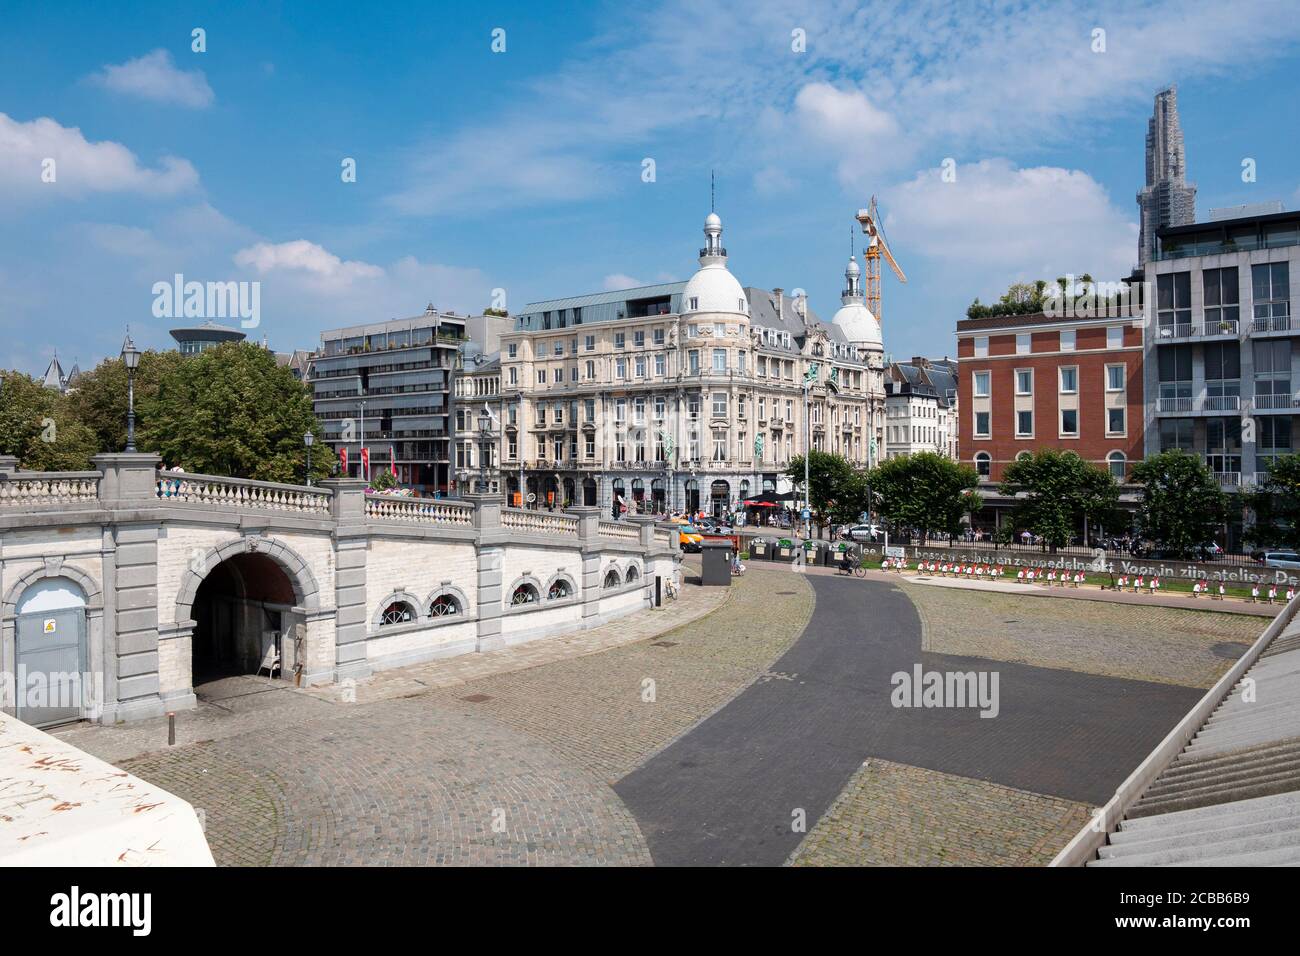 Anvers, Belgique, 19 juillet 2020, vue d'ensemble de la place vide Steenplein Banque D'Images